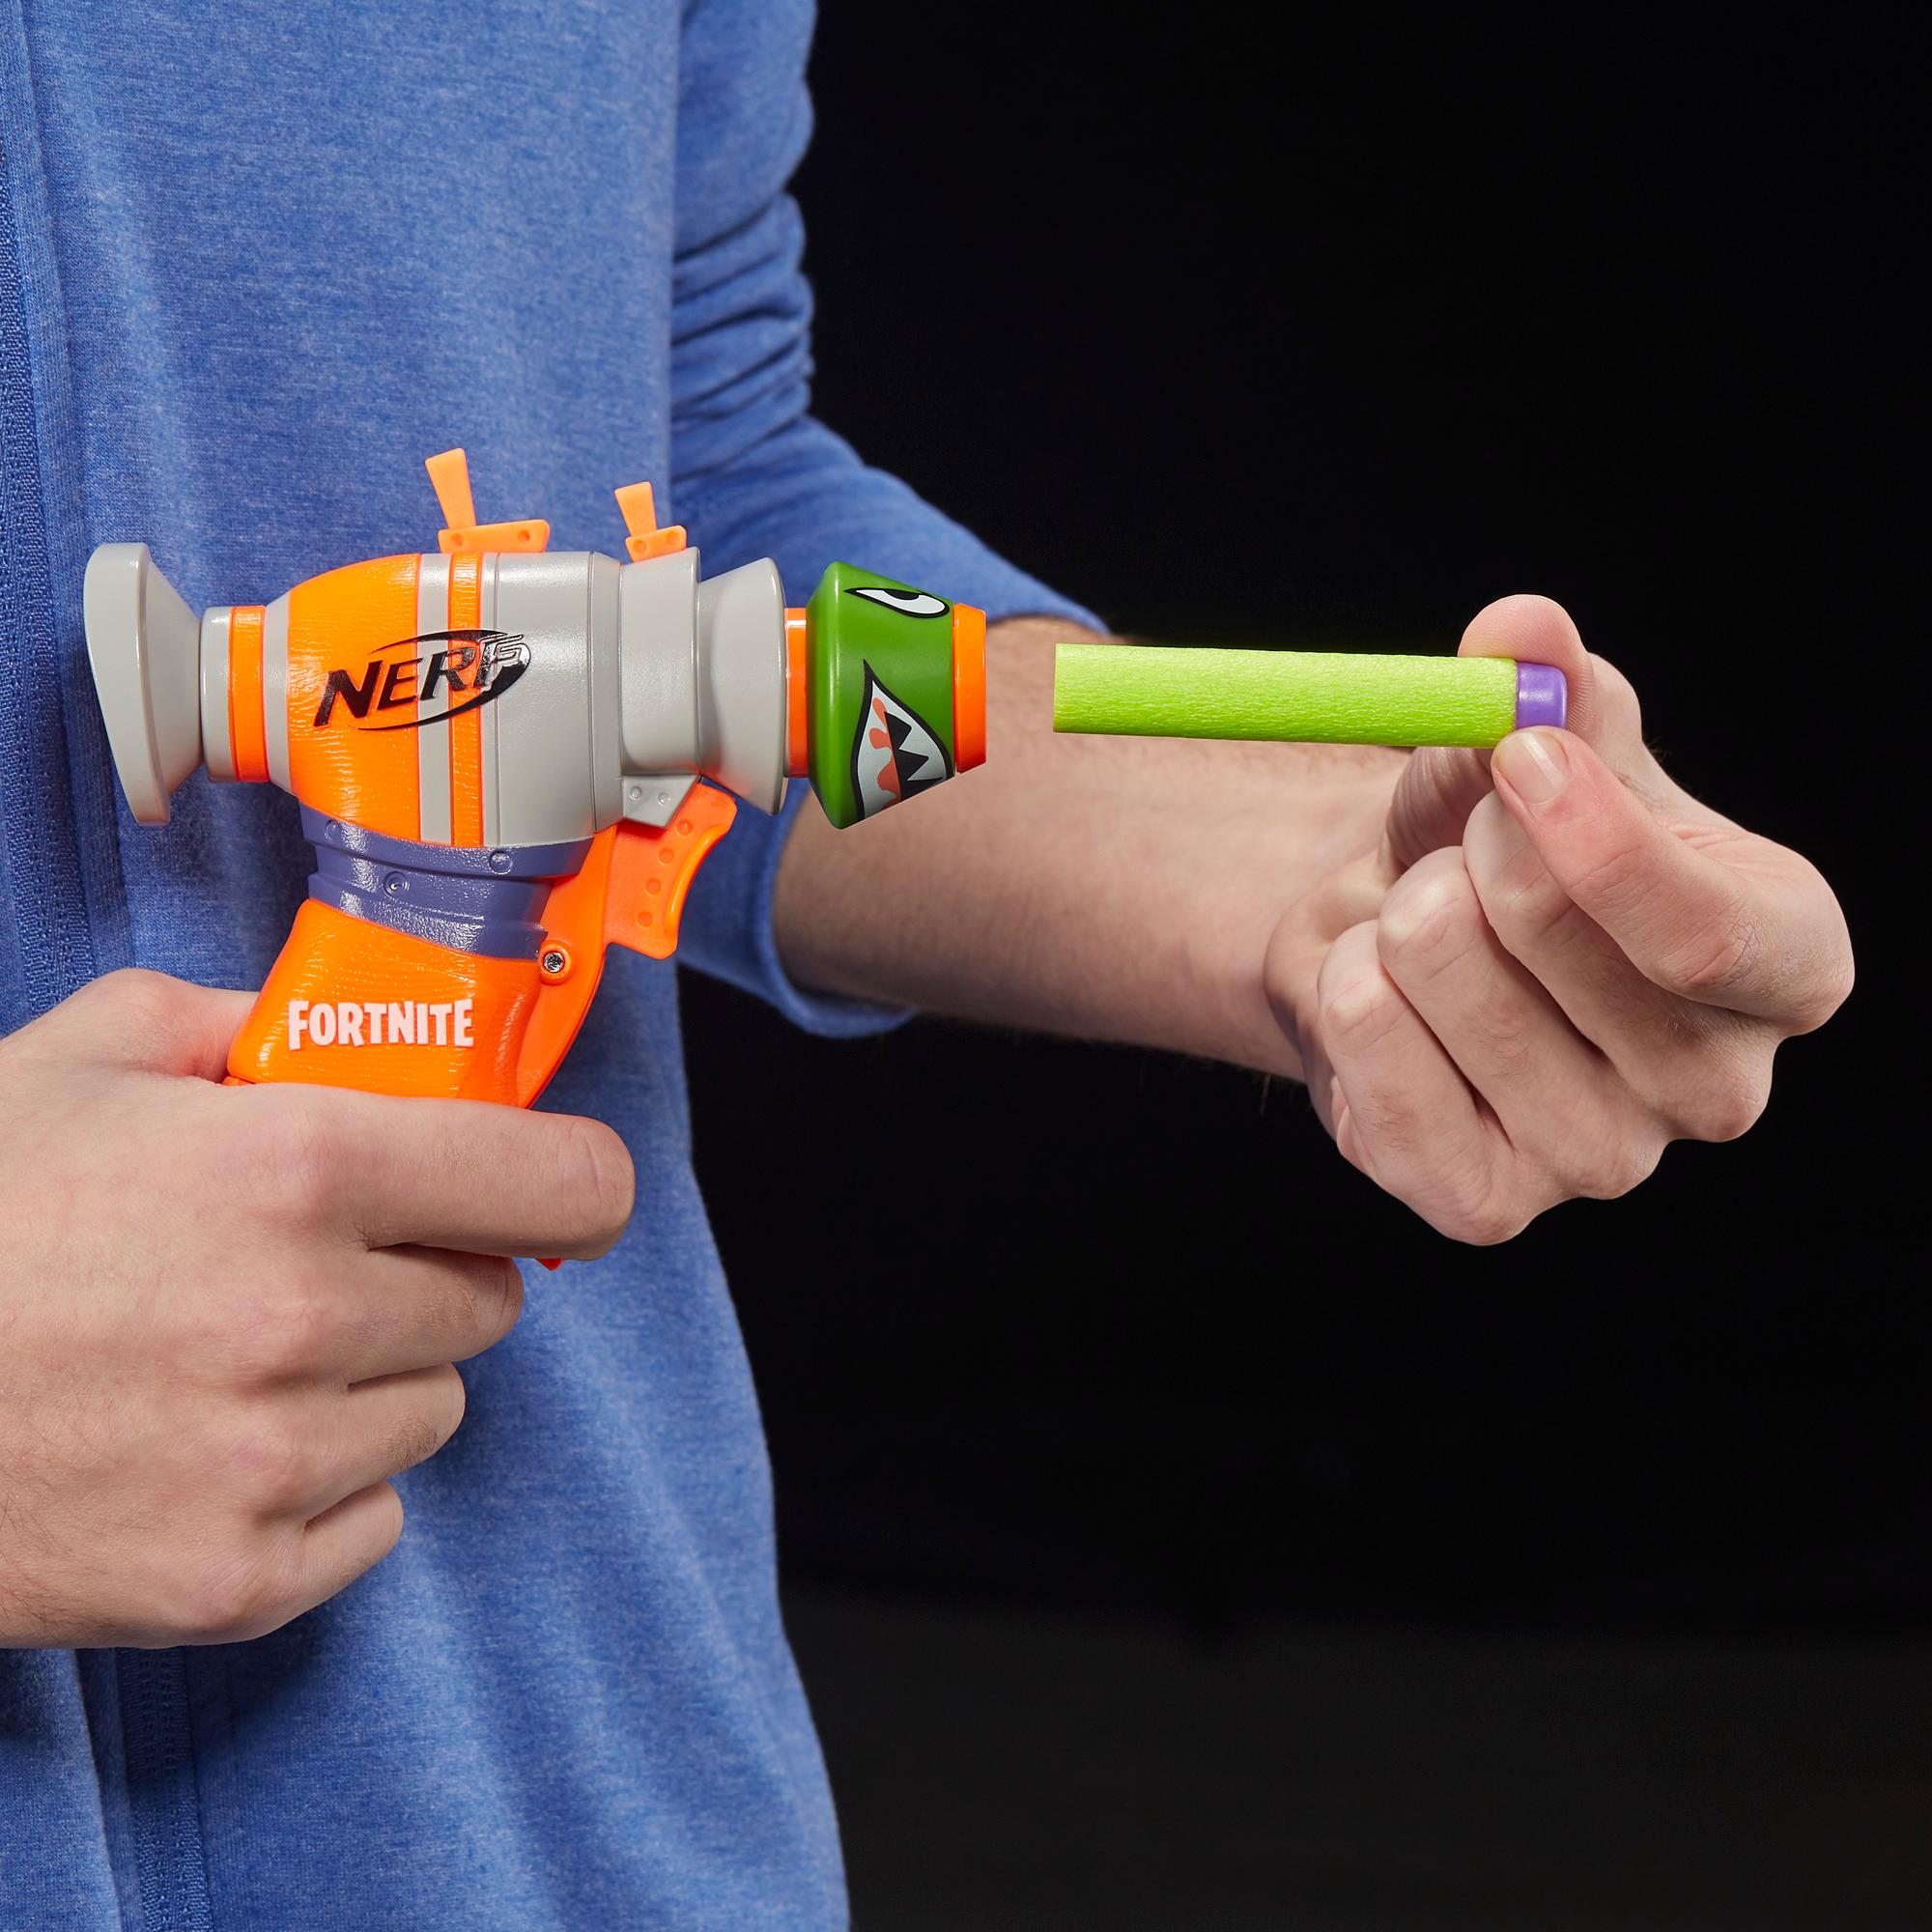 Fortnite RL Nerf MicroShots Dart-Firing Toy Blaster